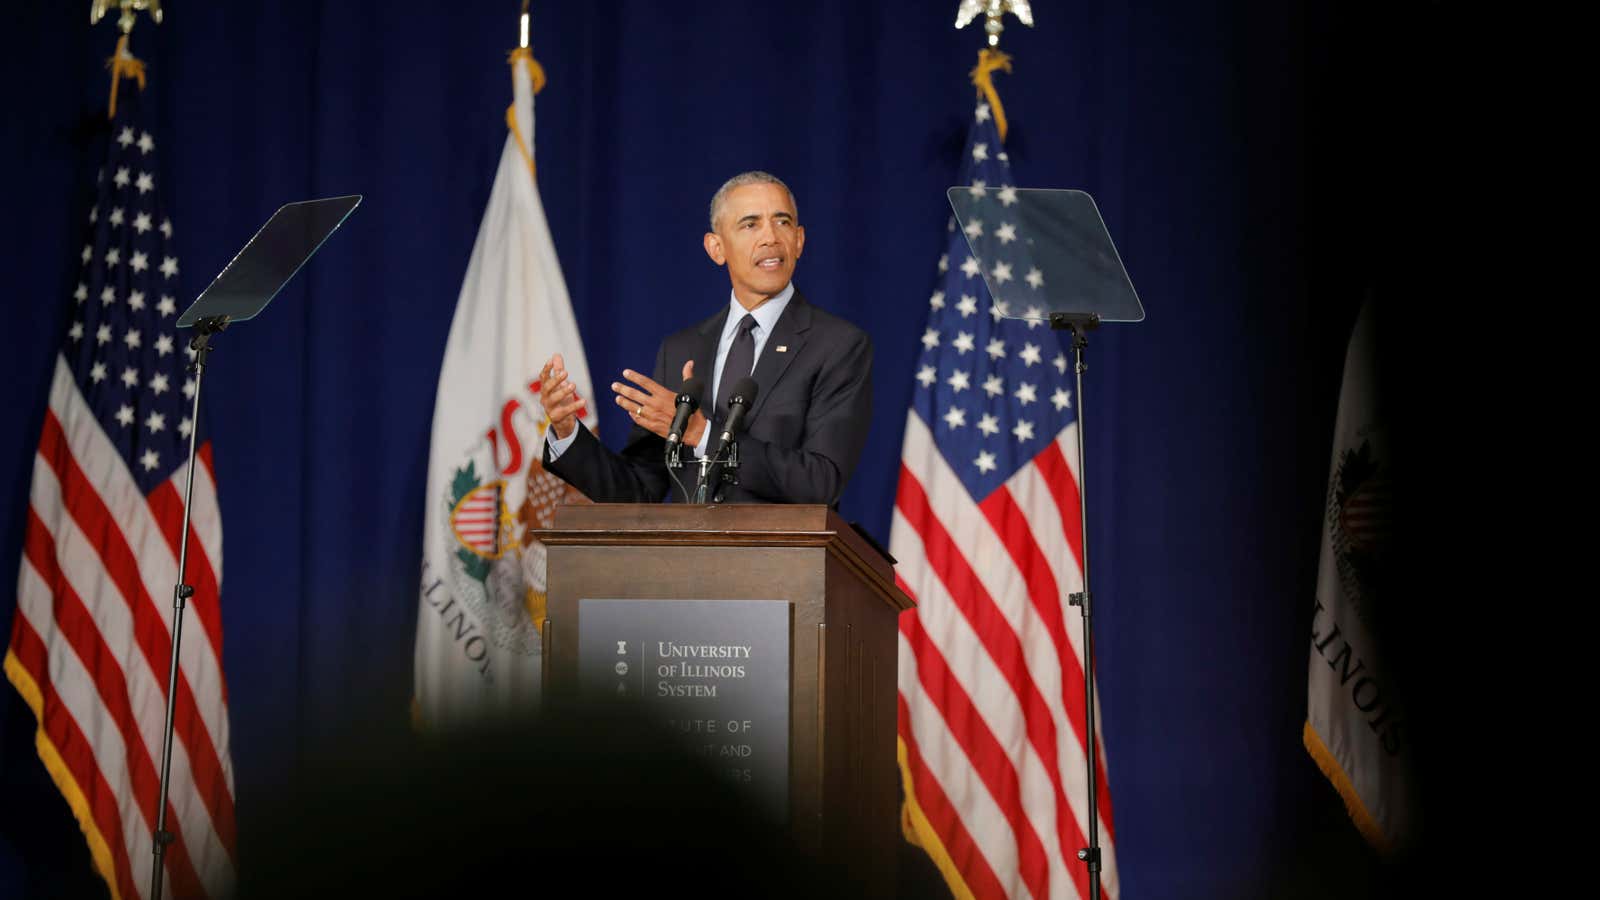 Former President Barack Obama speaks at the University of Illinois.